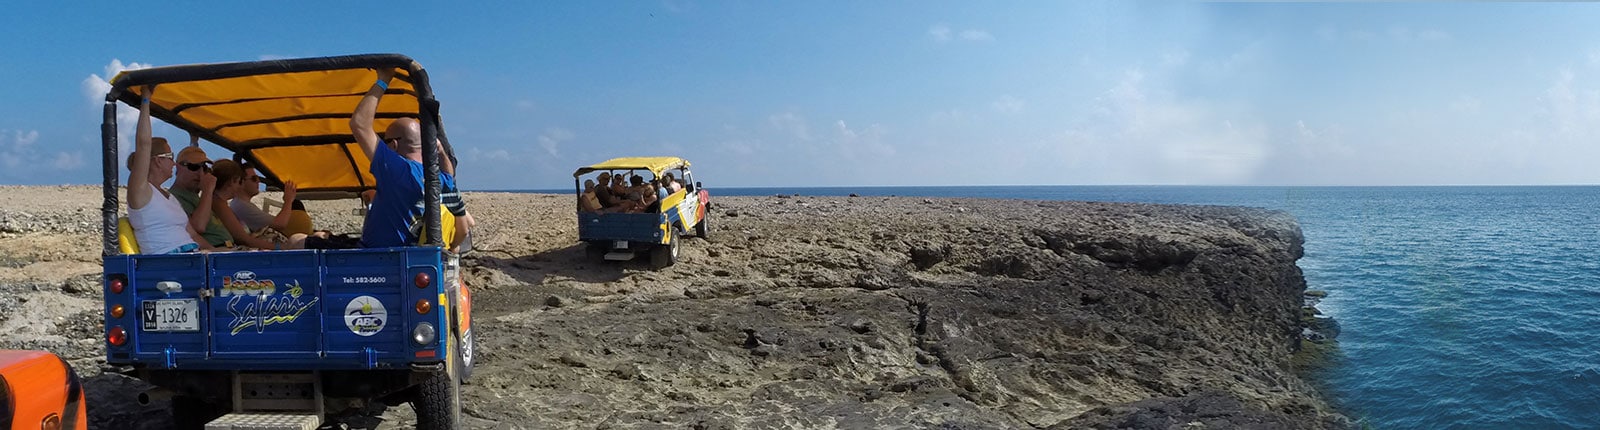 Riding in open air Jeeps along rocky terrain in Aruba